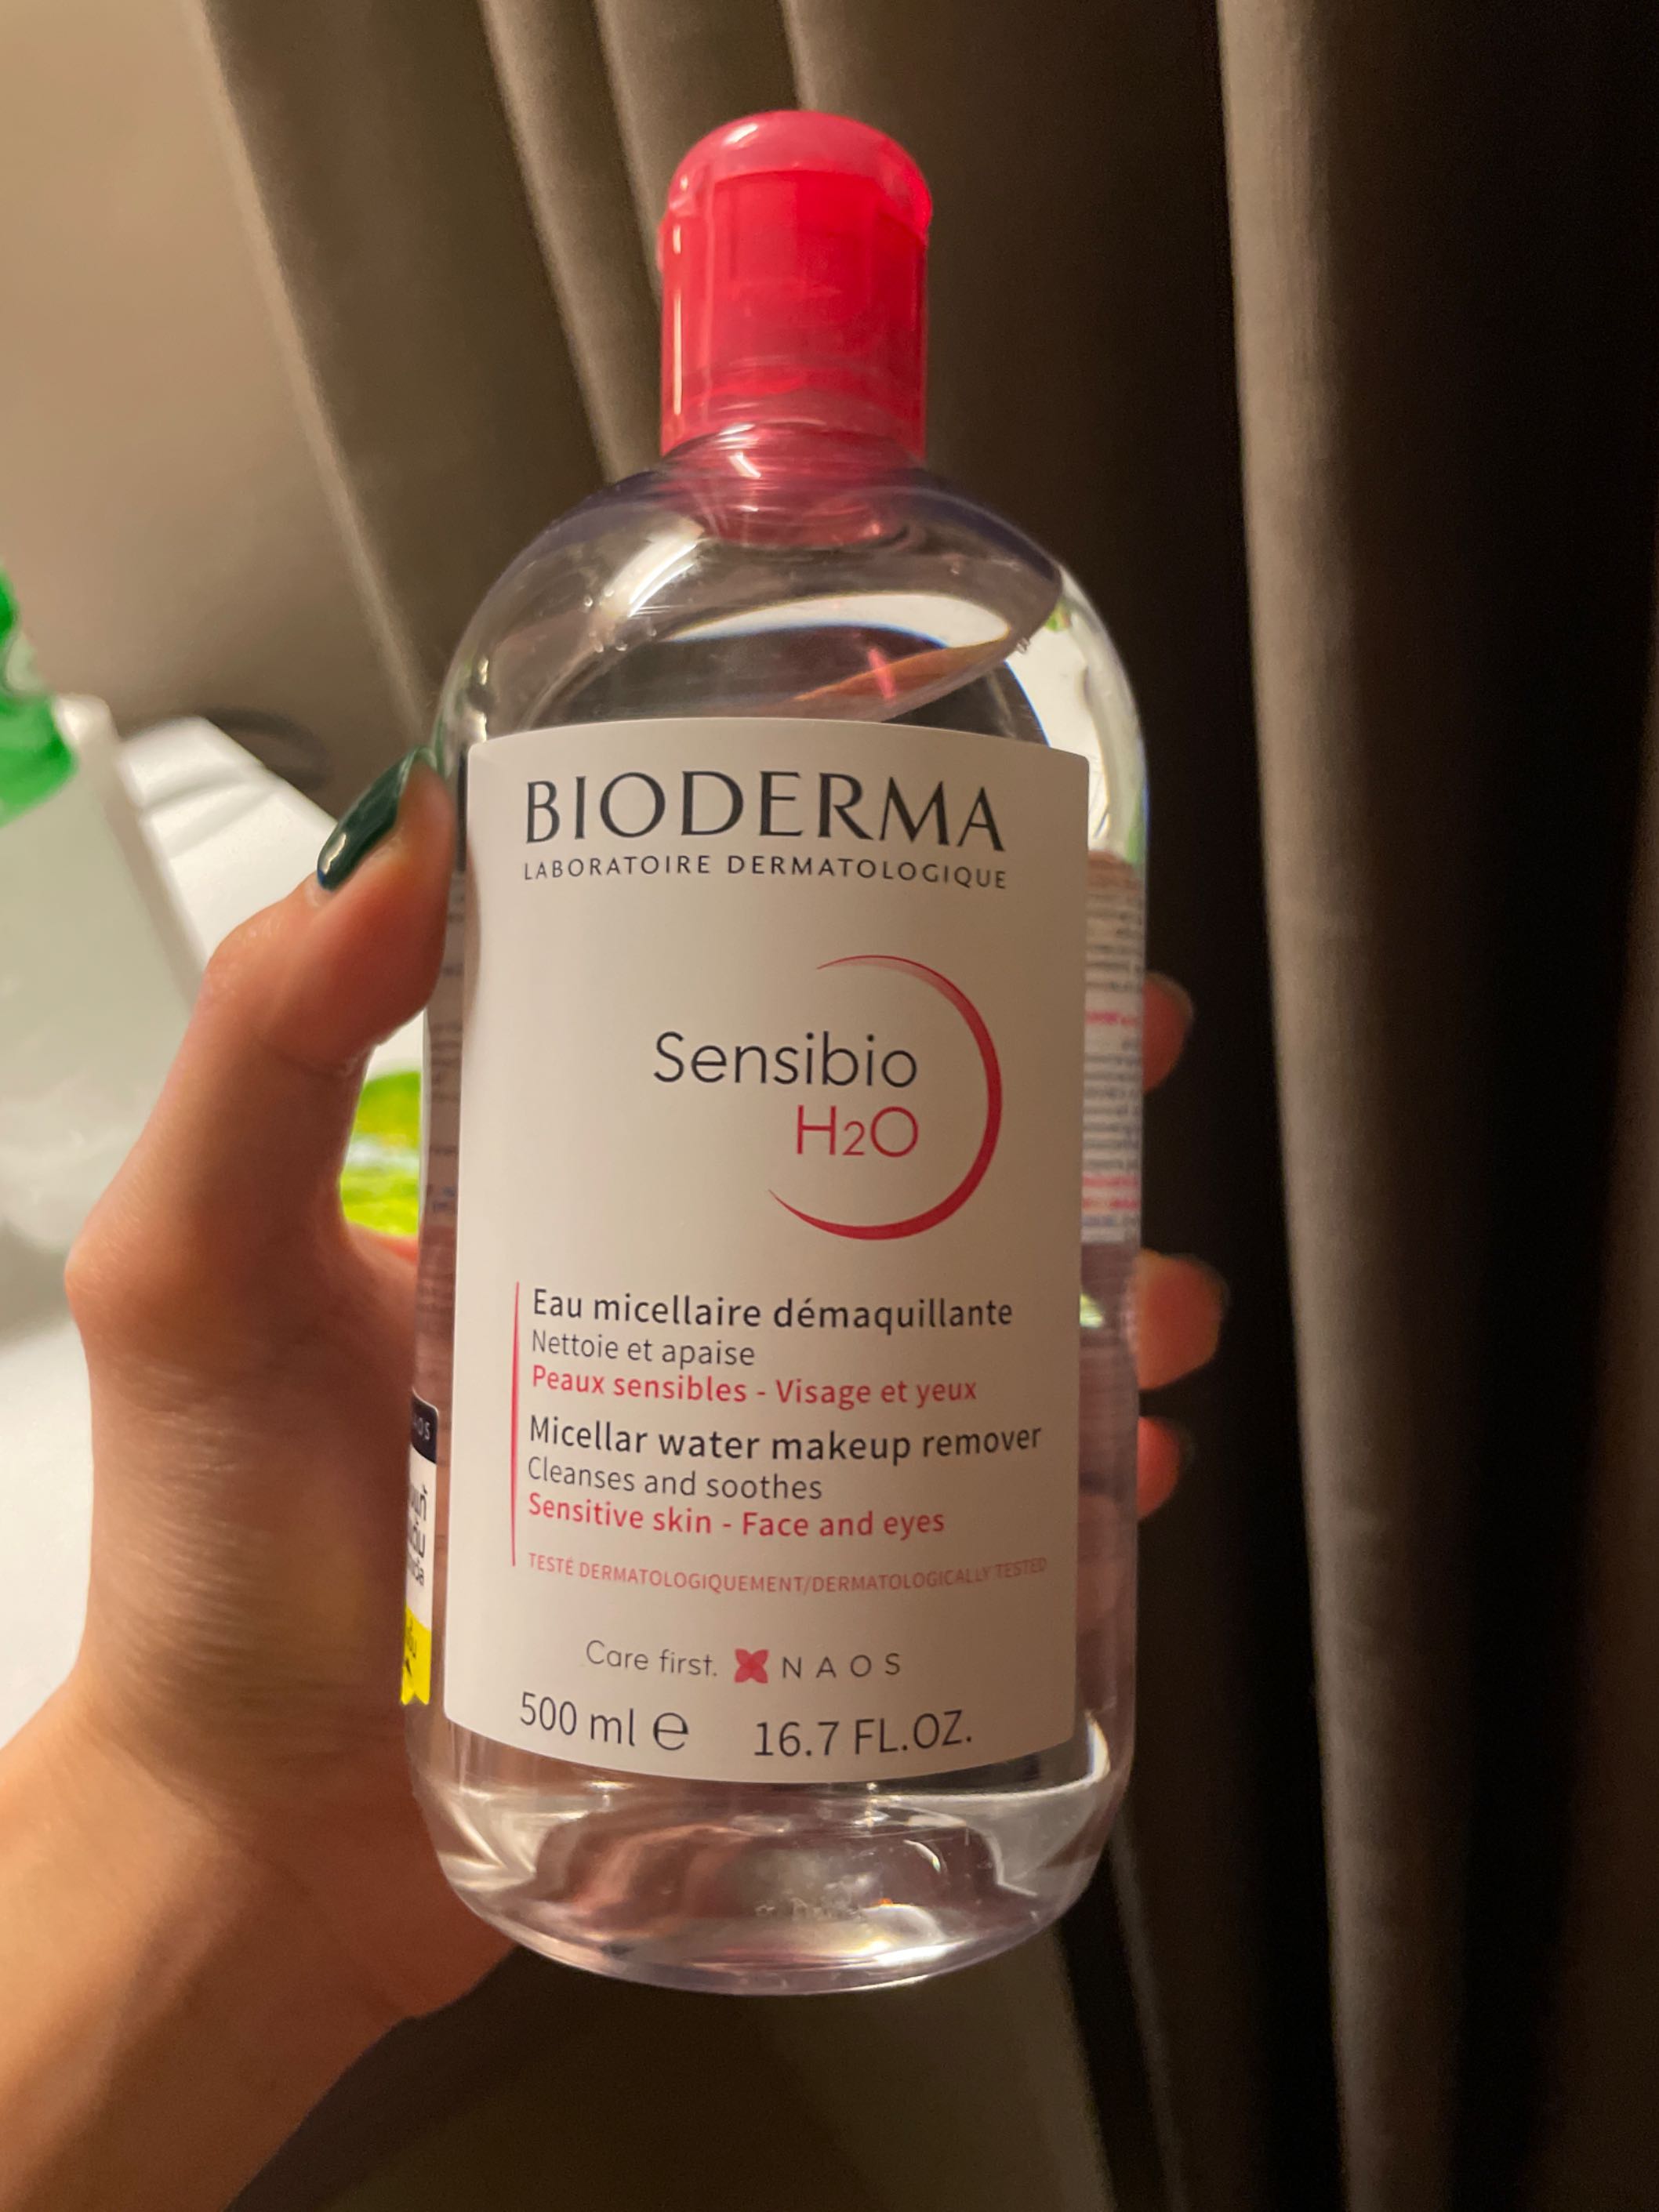 BIODERMA Sensibio H2O Micellar Water Cleansing Makeup Remover